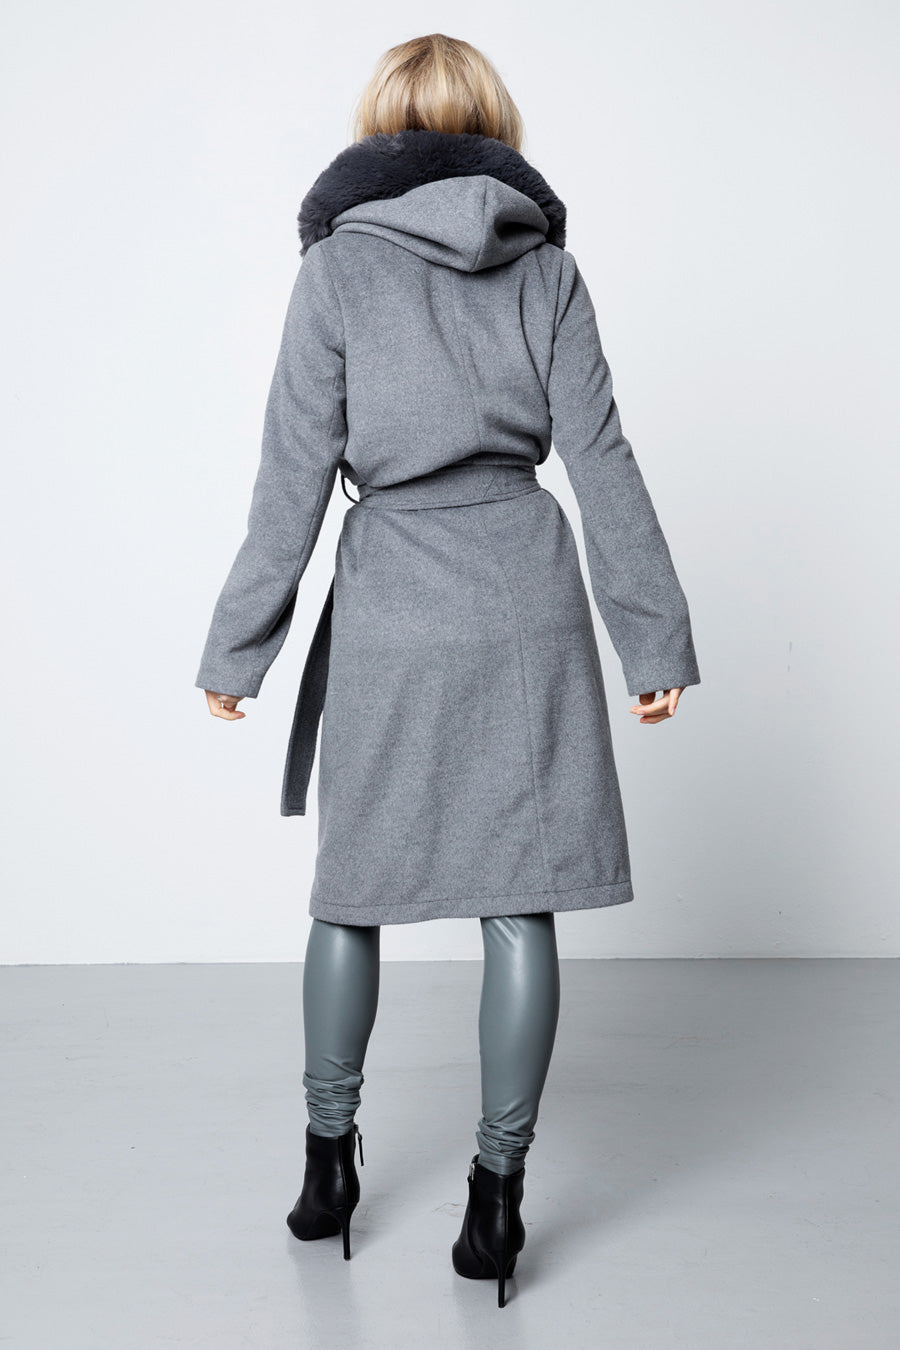 The Long Wool Coat - Grey - Sannealexandra - Model:Sanne